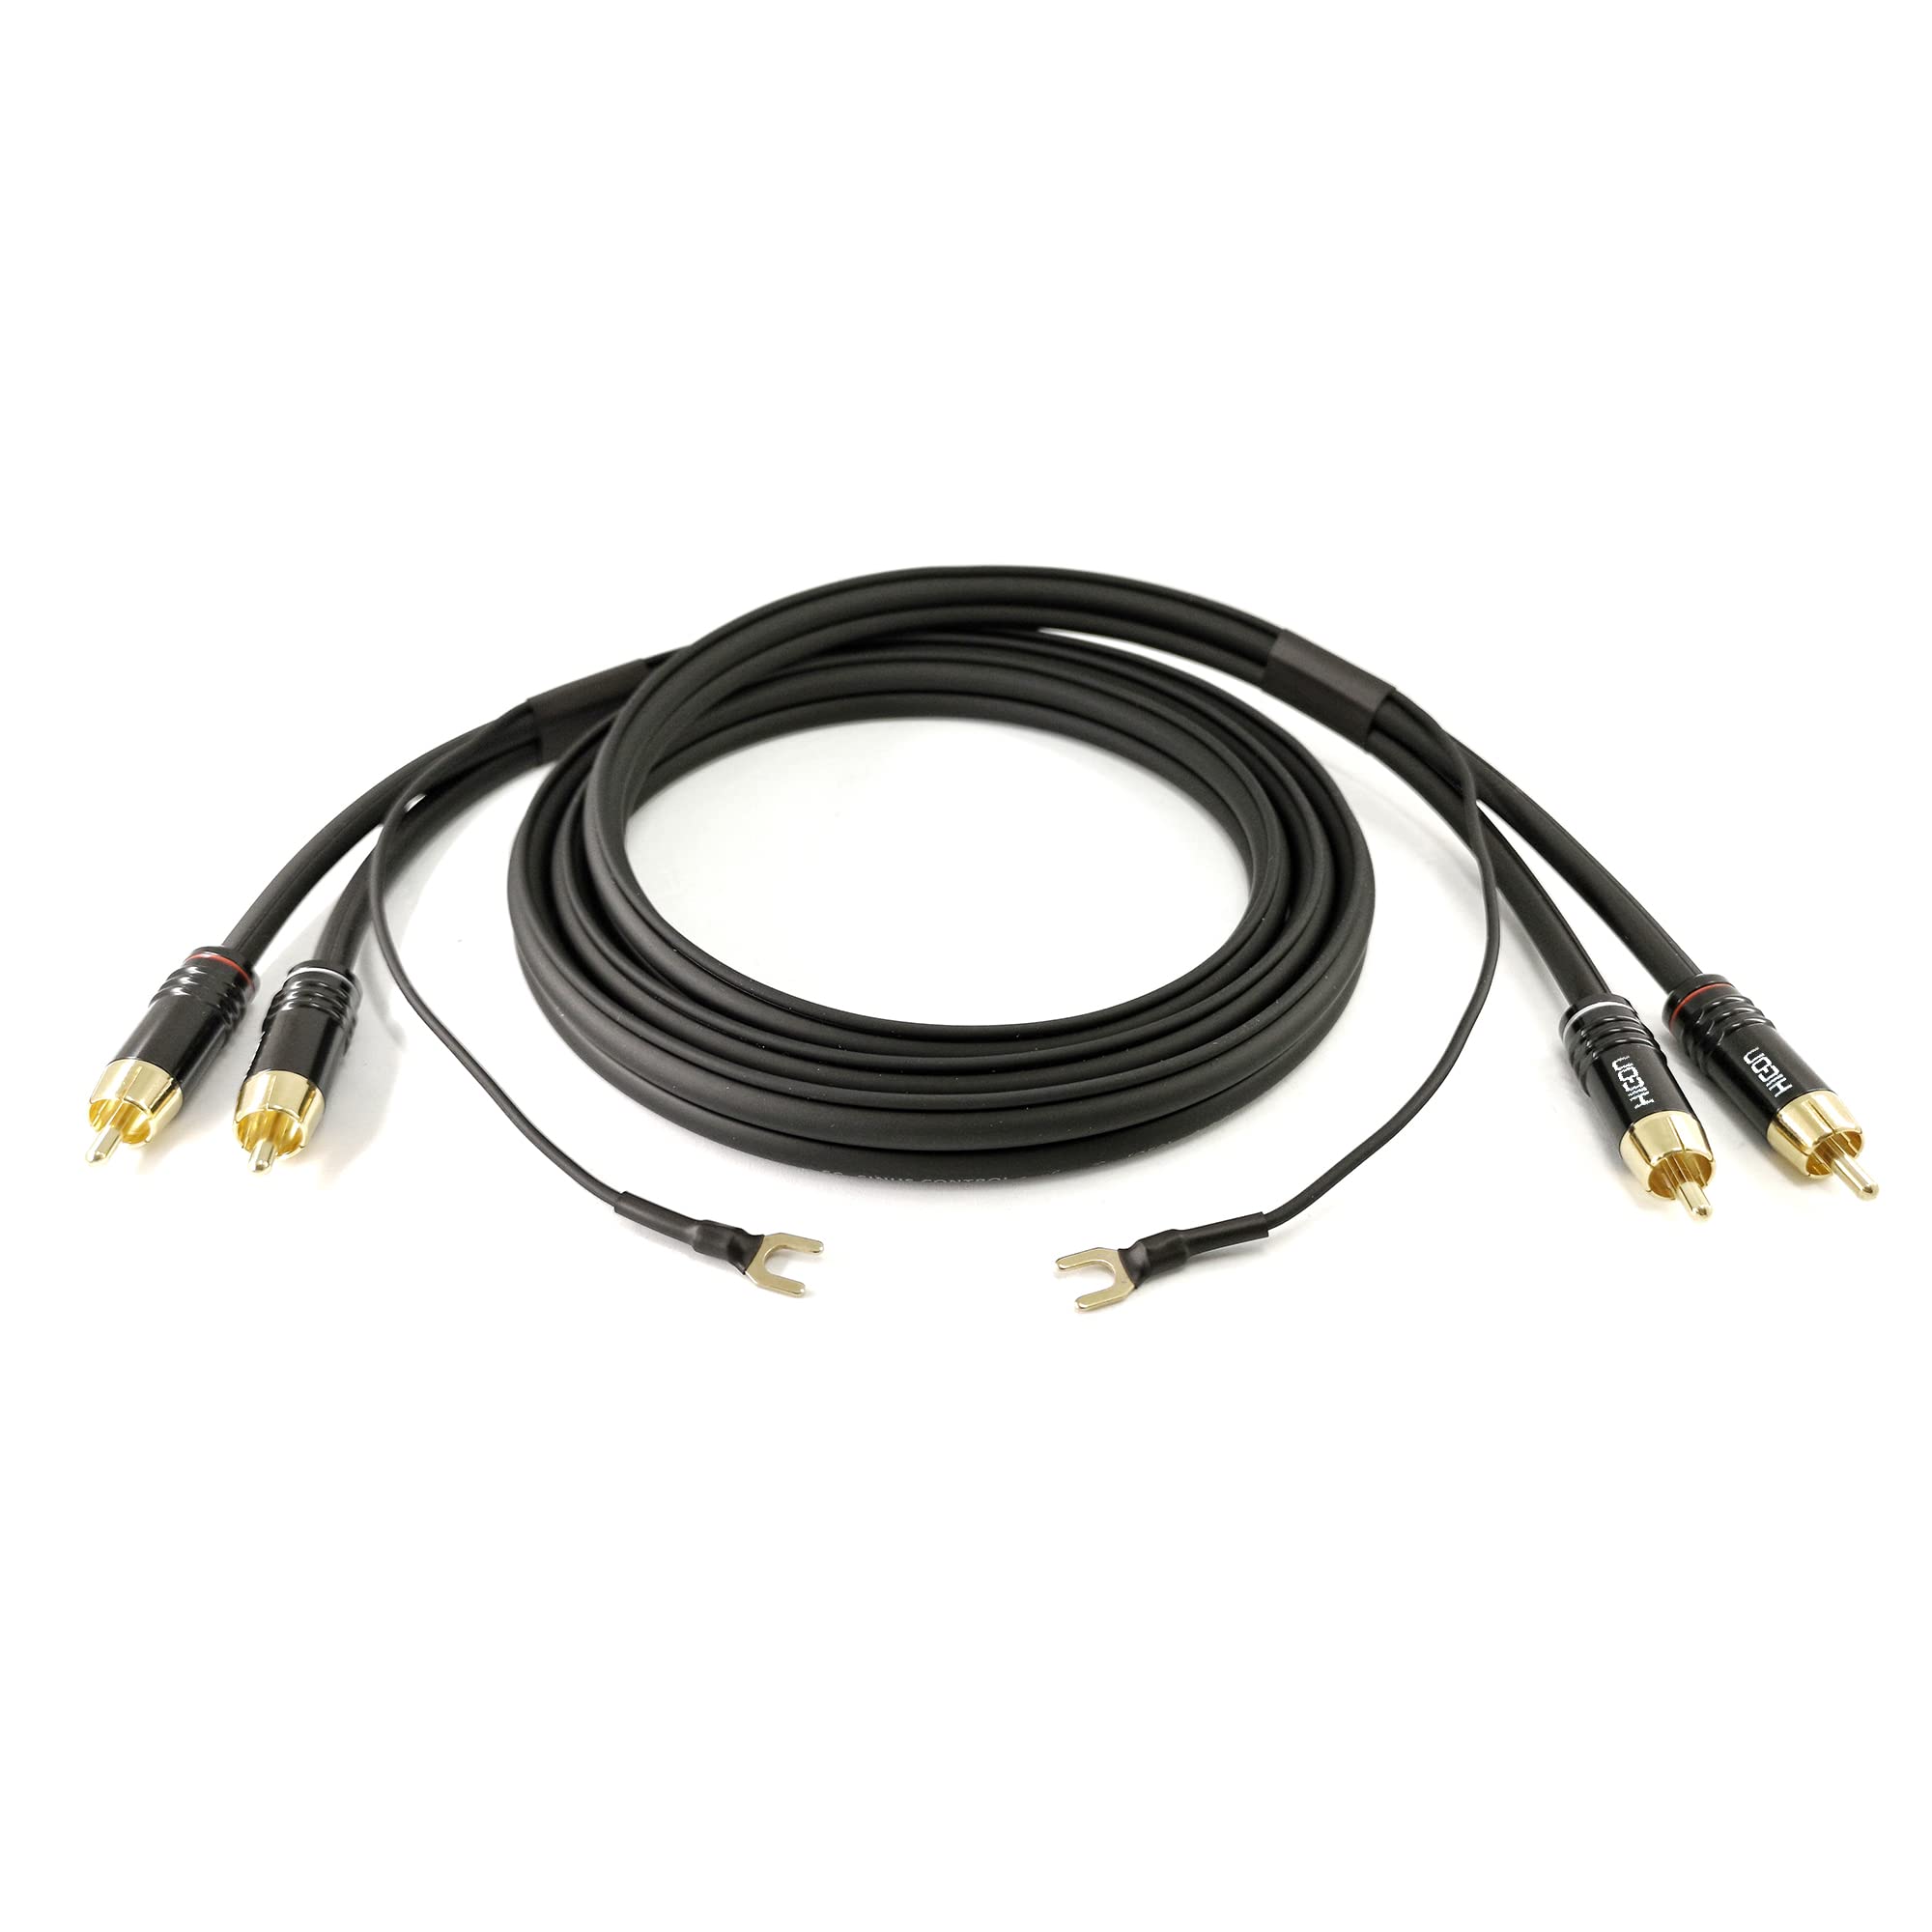 Selected Cable 8m Plattenspielerkabel RCA Phono doppelt geschirmt 2x 0,35mm² Audiokabel 1x 0,35mm² extra lange Masseleitung vergoldete Stecker - SC81-K3-BLK-0800